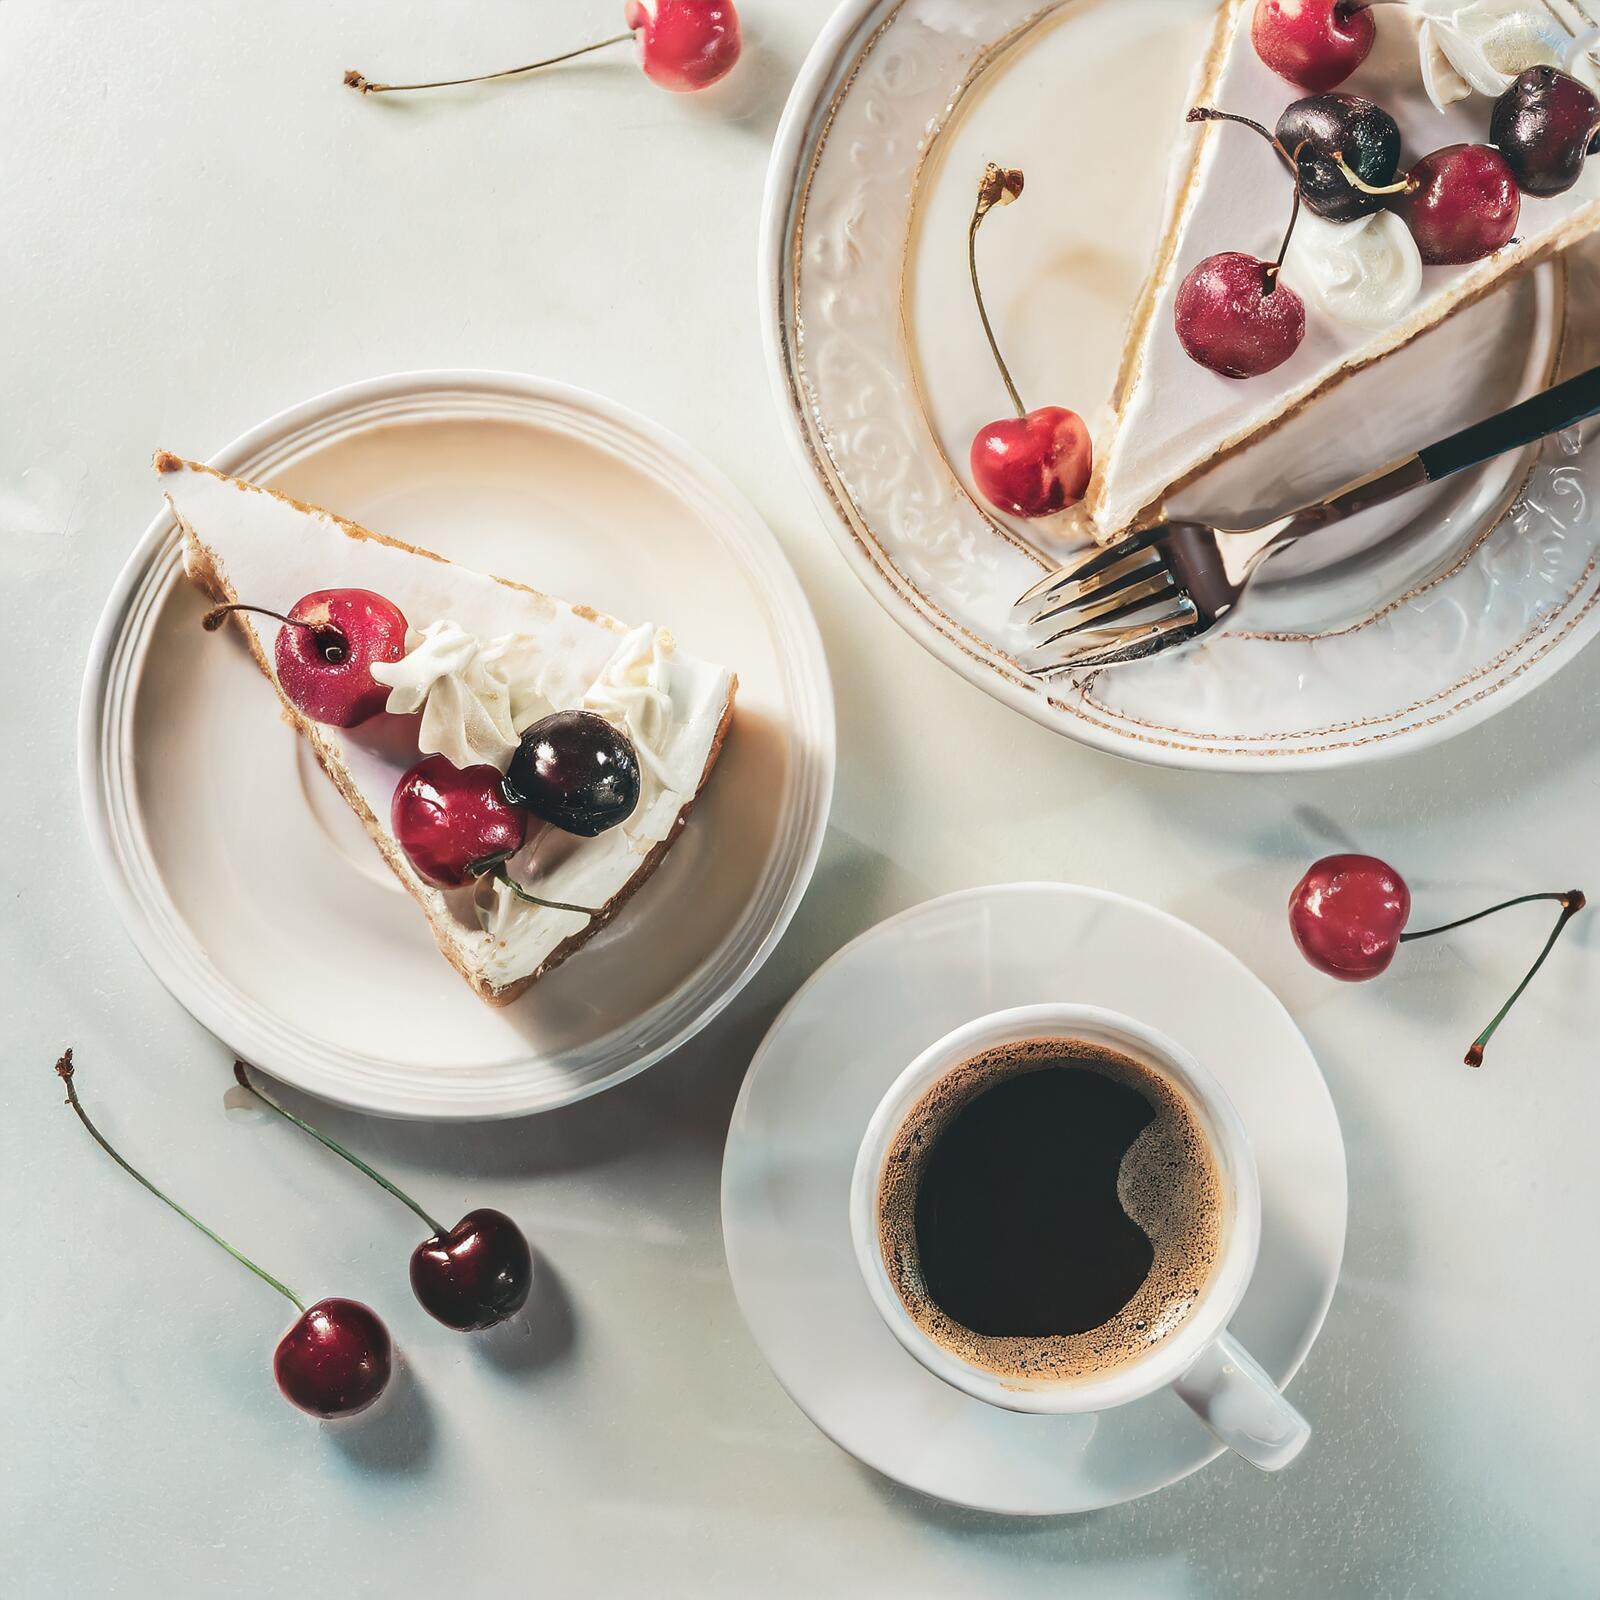 Бесплатное фото Чашка кофе капучино рядом с тарелкой с кусочком торта со сливками